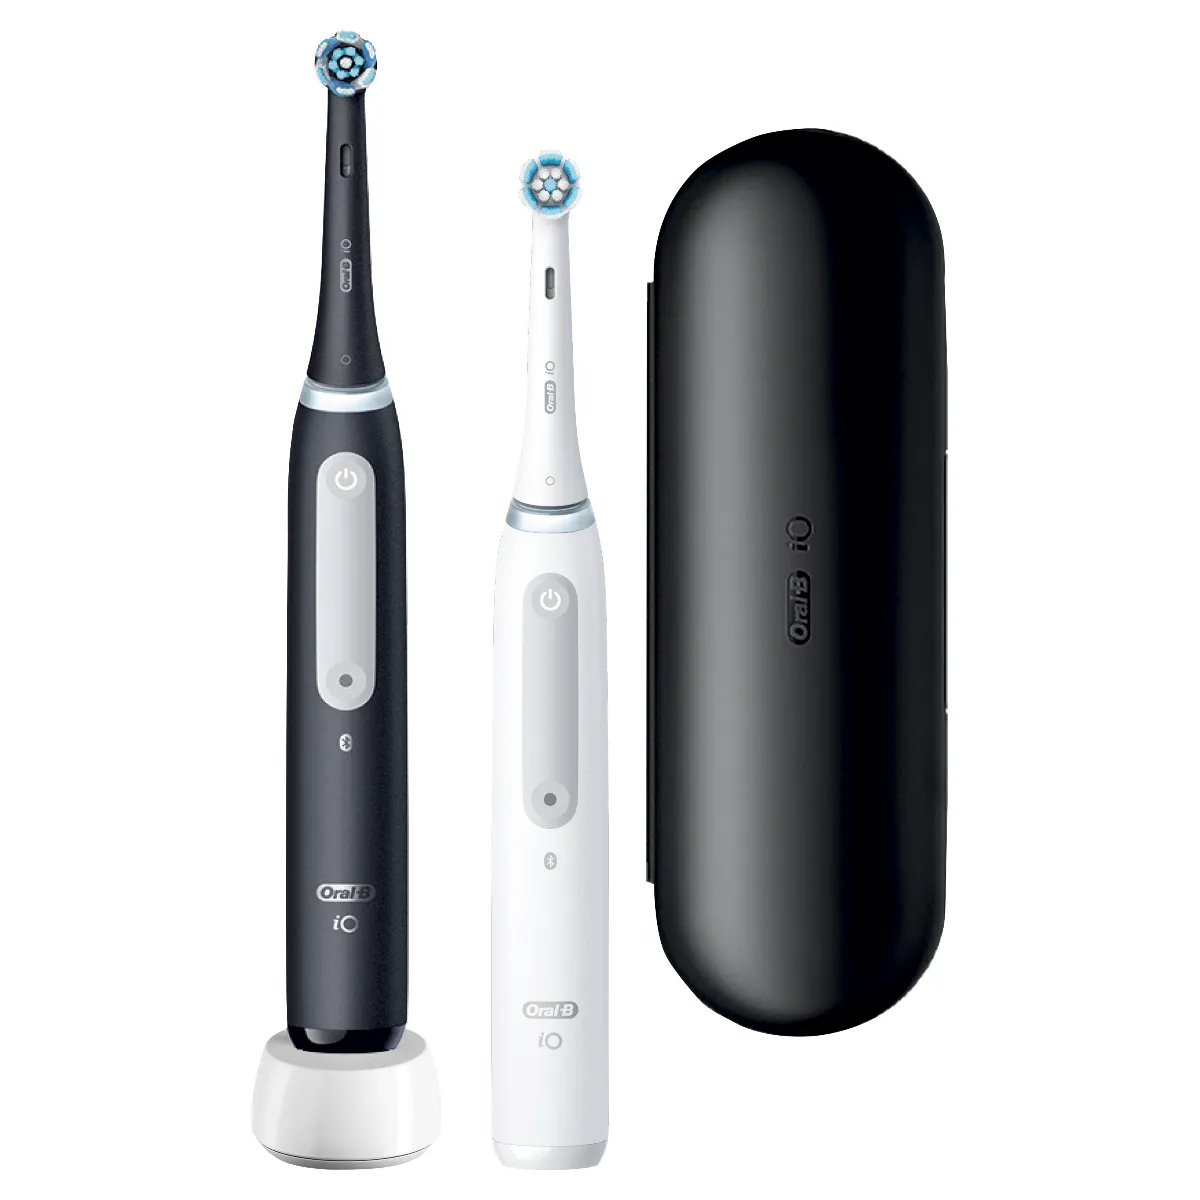 Oral B iO Series 4 Duo Black&White Elektrická zubná kefka 1×1 ks, elektrická zubná kefka